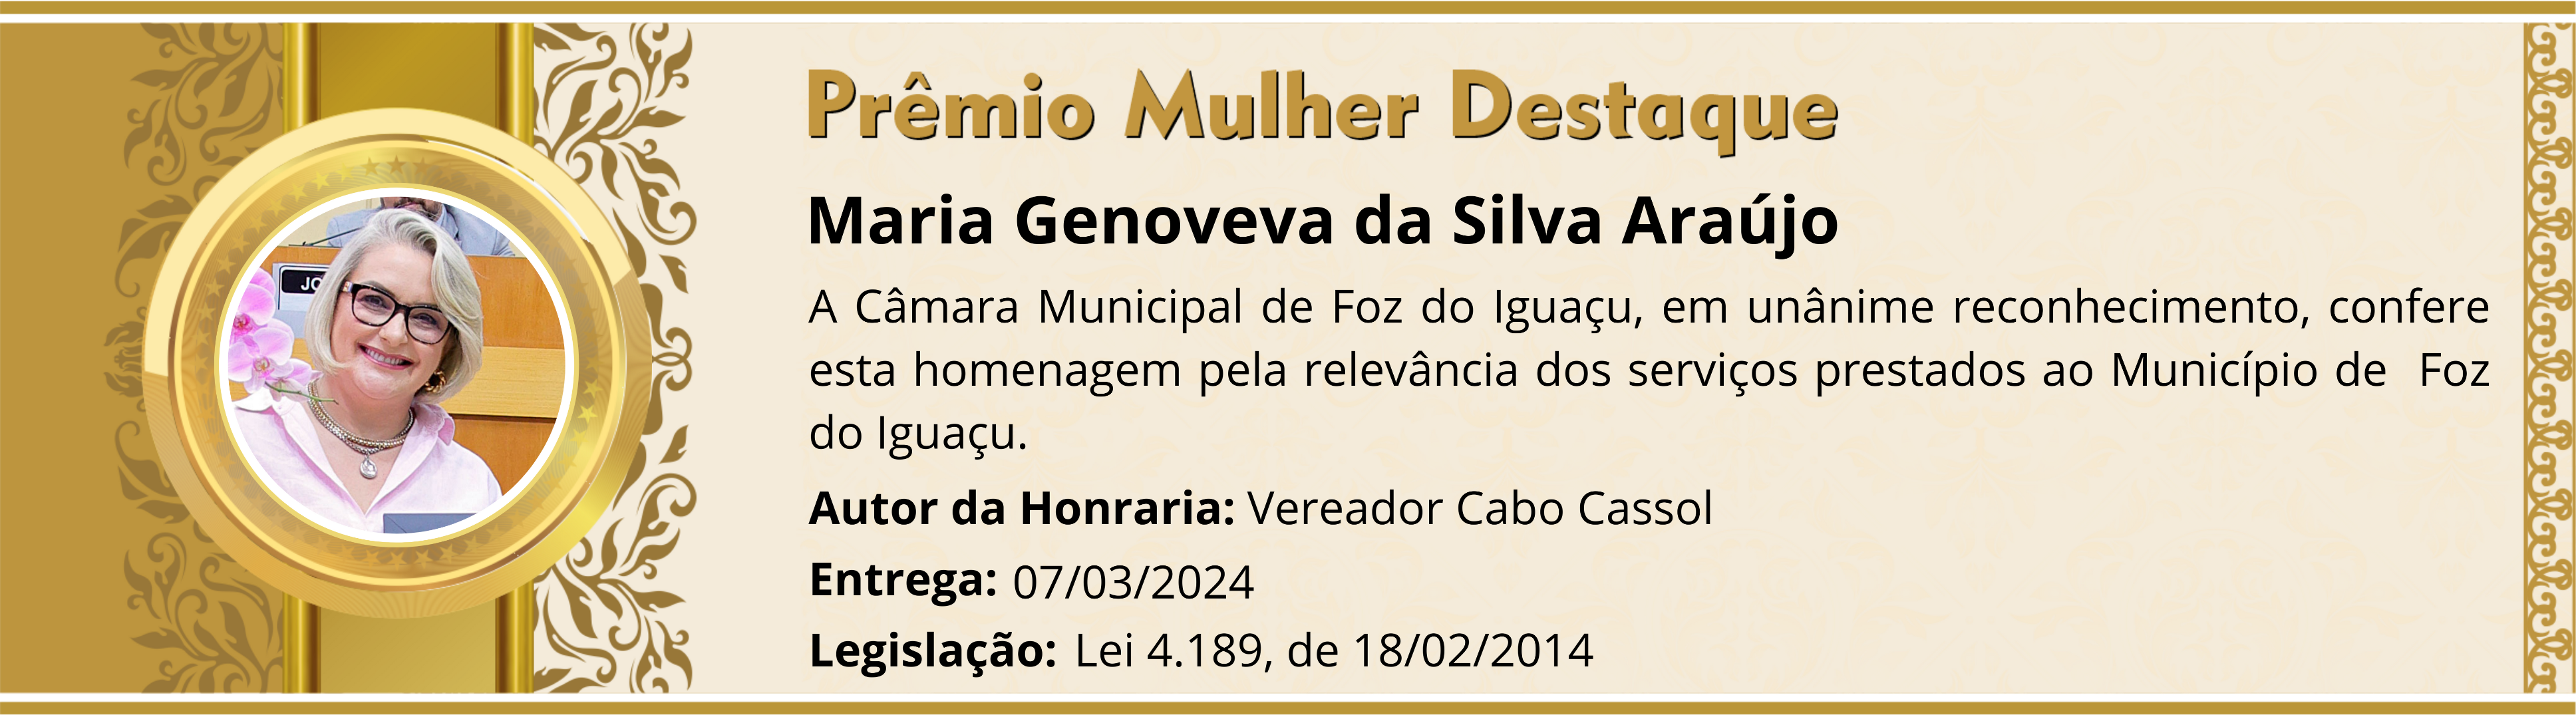 Maria Genoveva da Silva Araújo